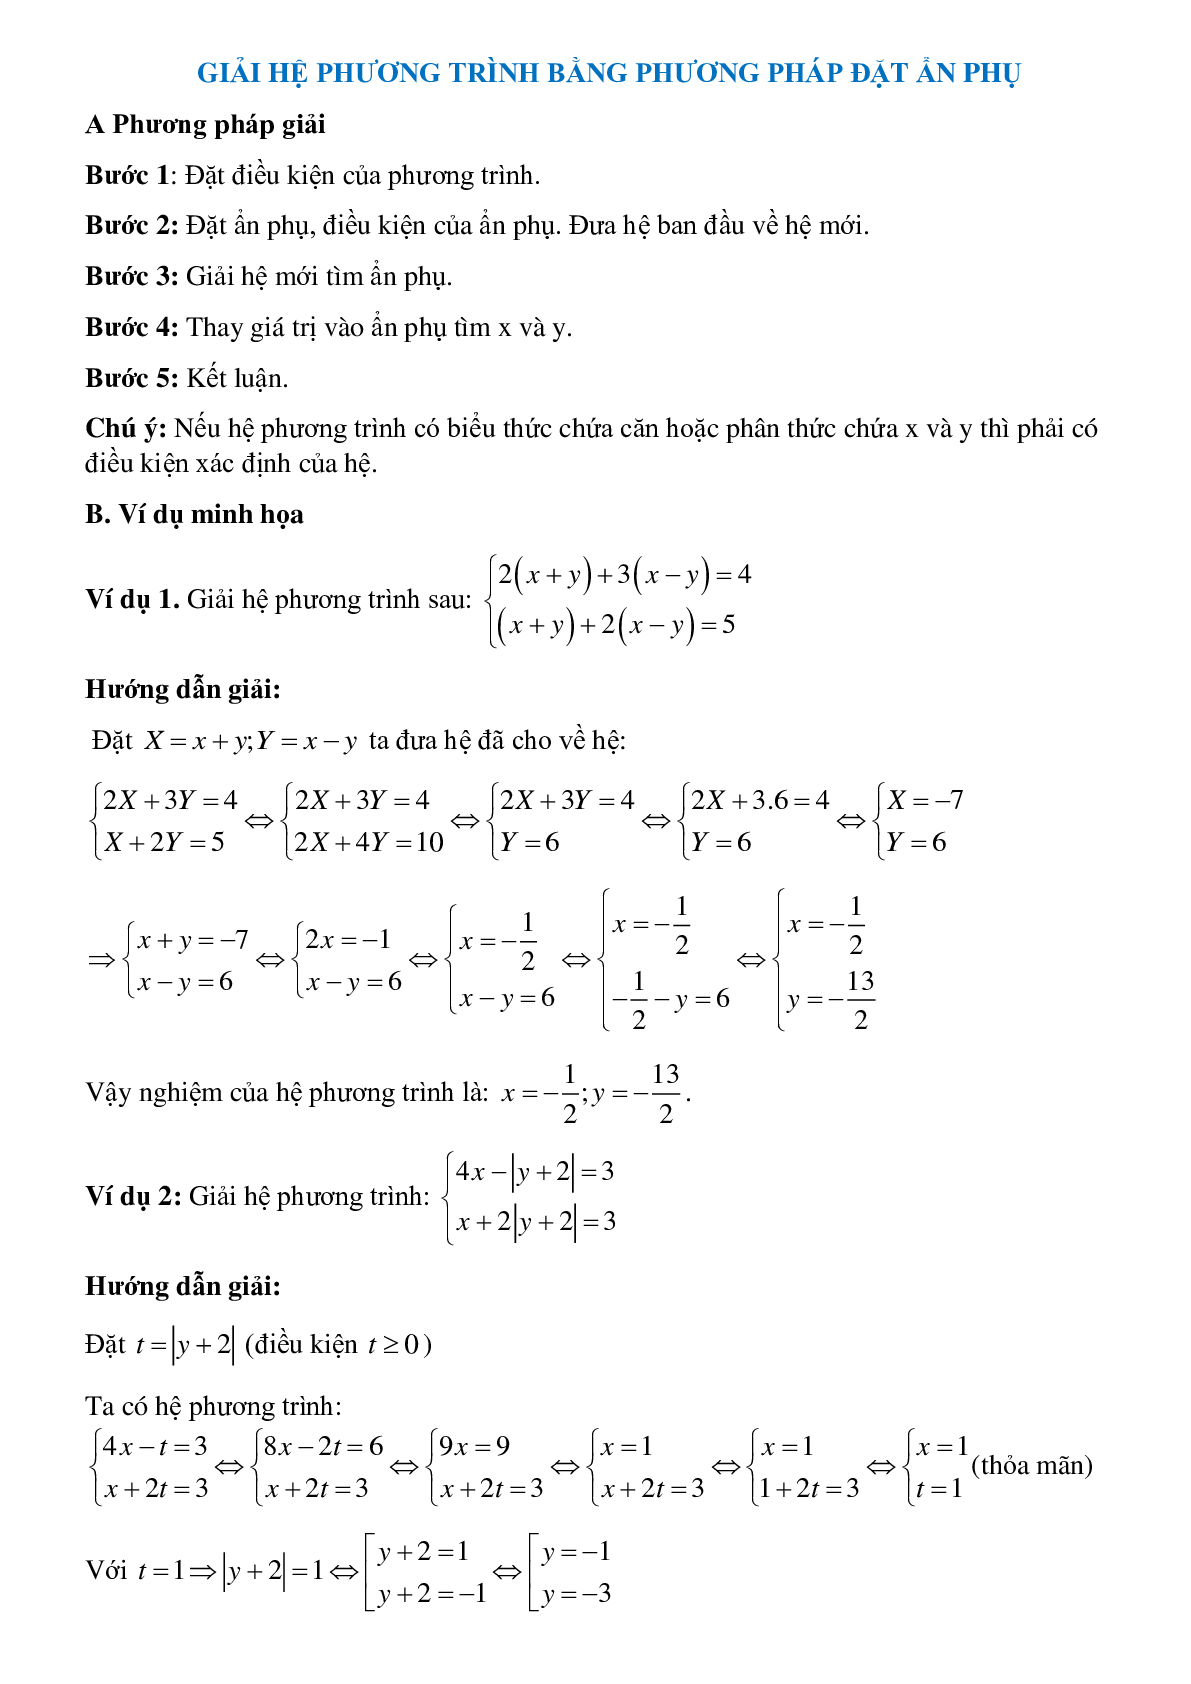 Bài tập về Giải hệ phương trình bằng phương pháp đặt ẩn phụ có lời giải (trang 1)